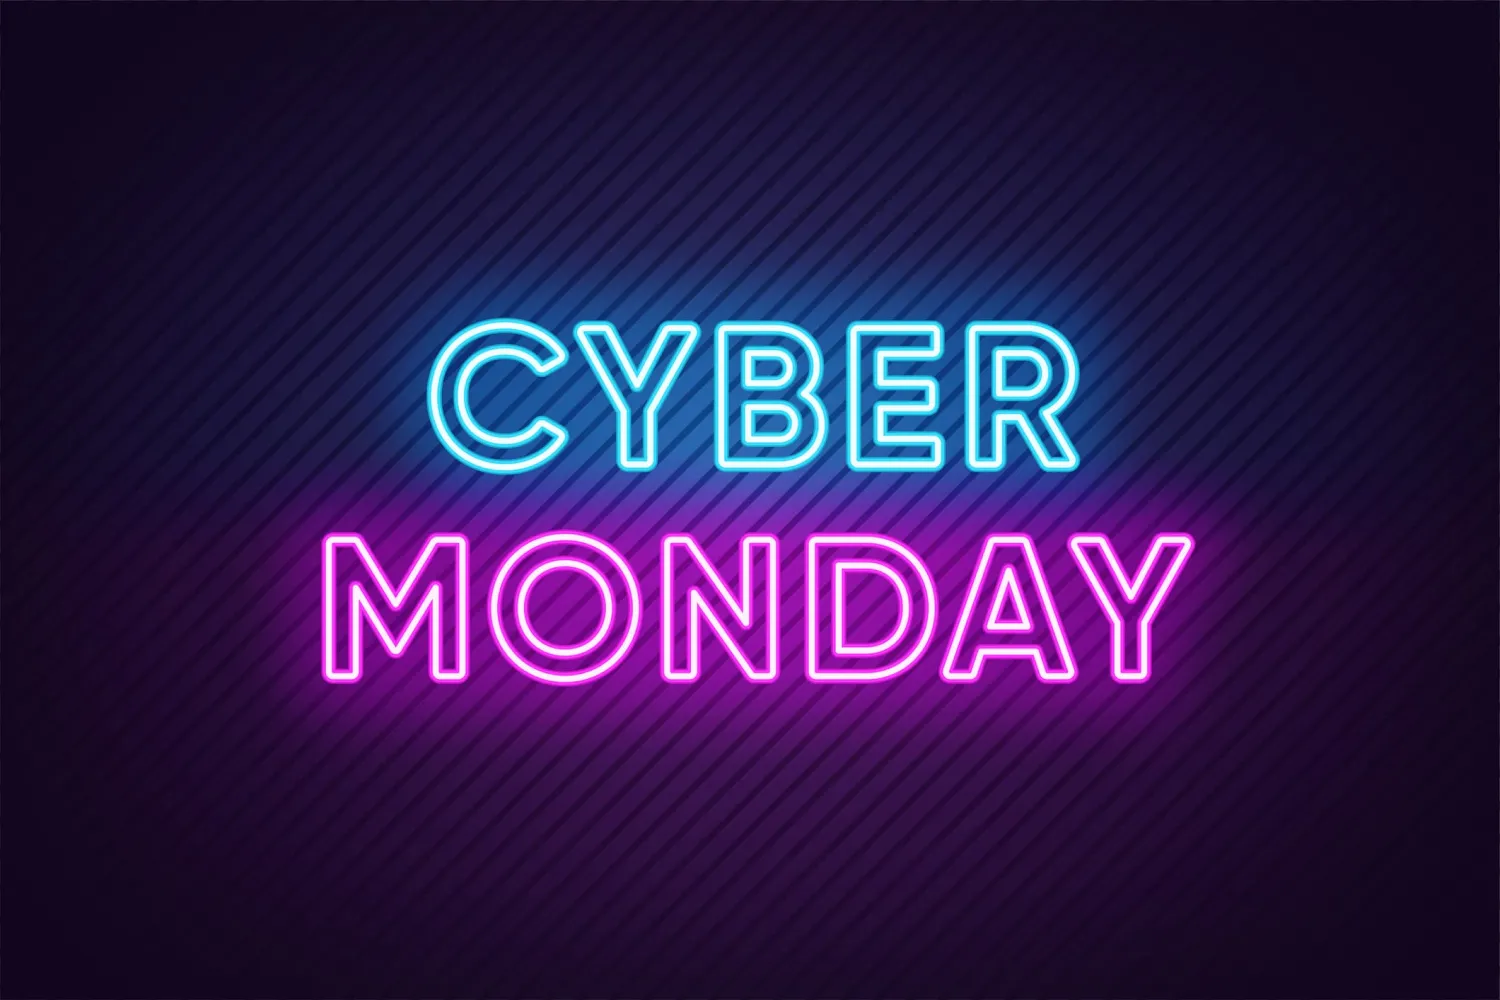 Cyber Monday Neon Plakat in blau und lila Farben.